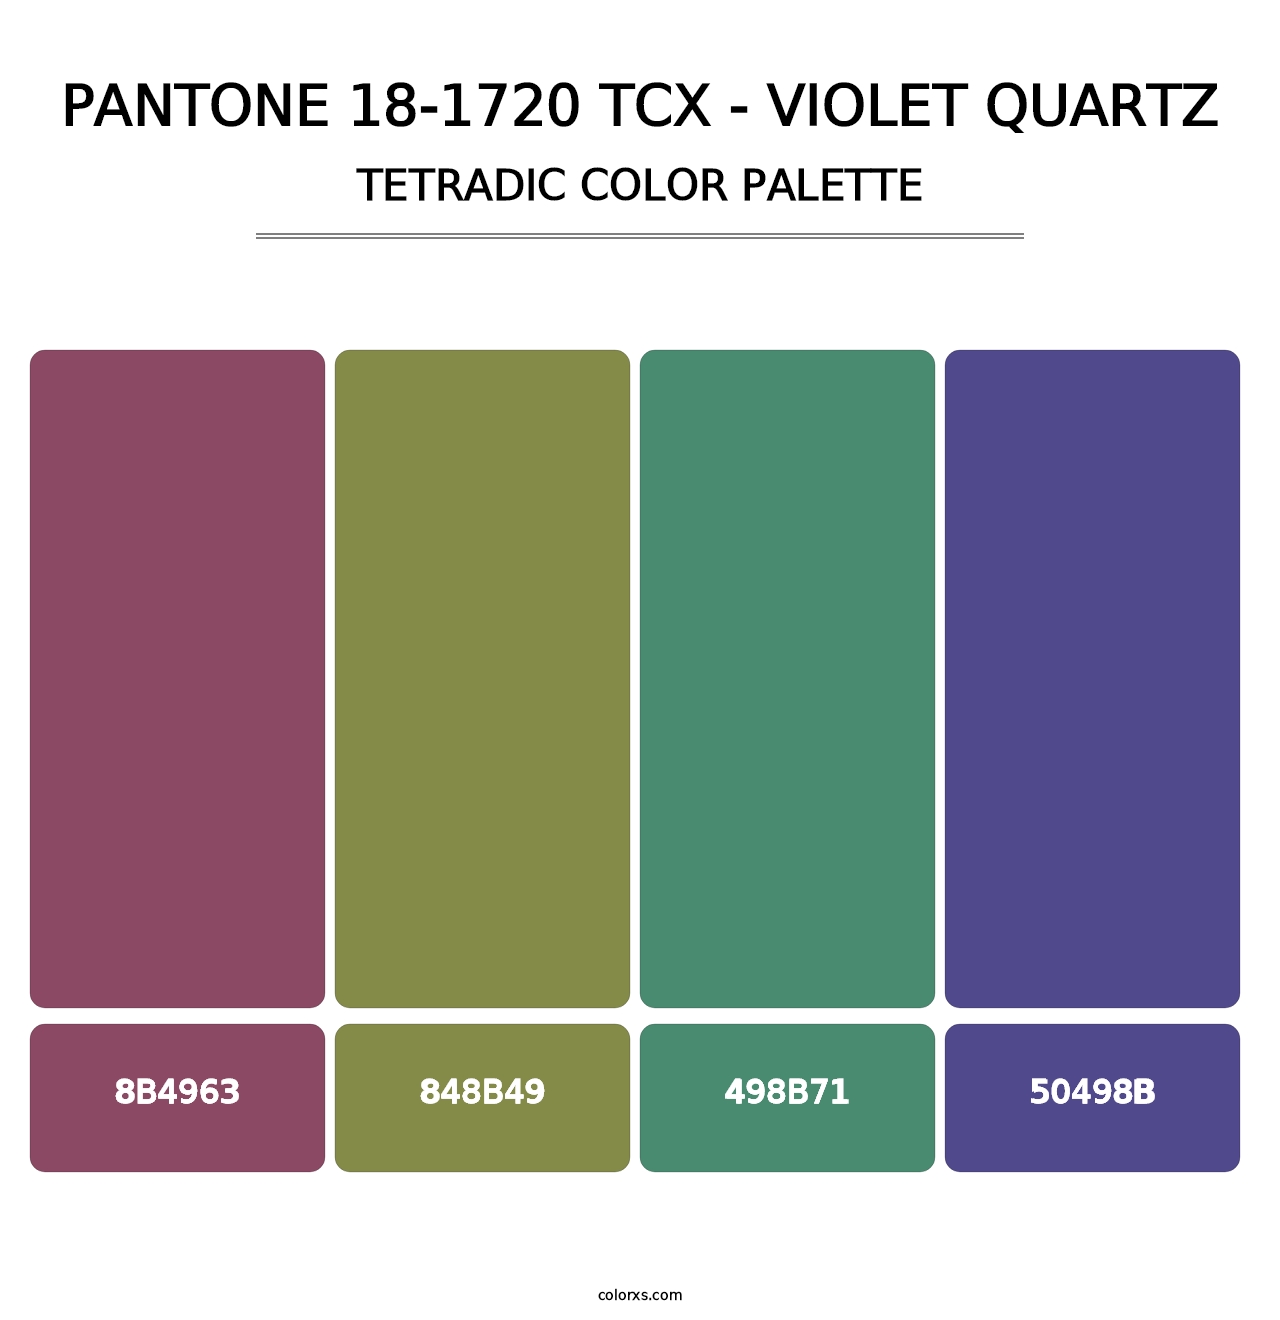 PANTONE 18-1720 TCX - Violet Quartz - Tetradic Color Palette